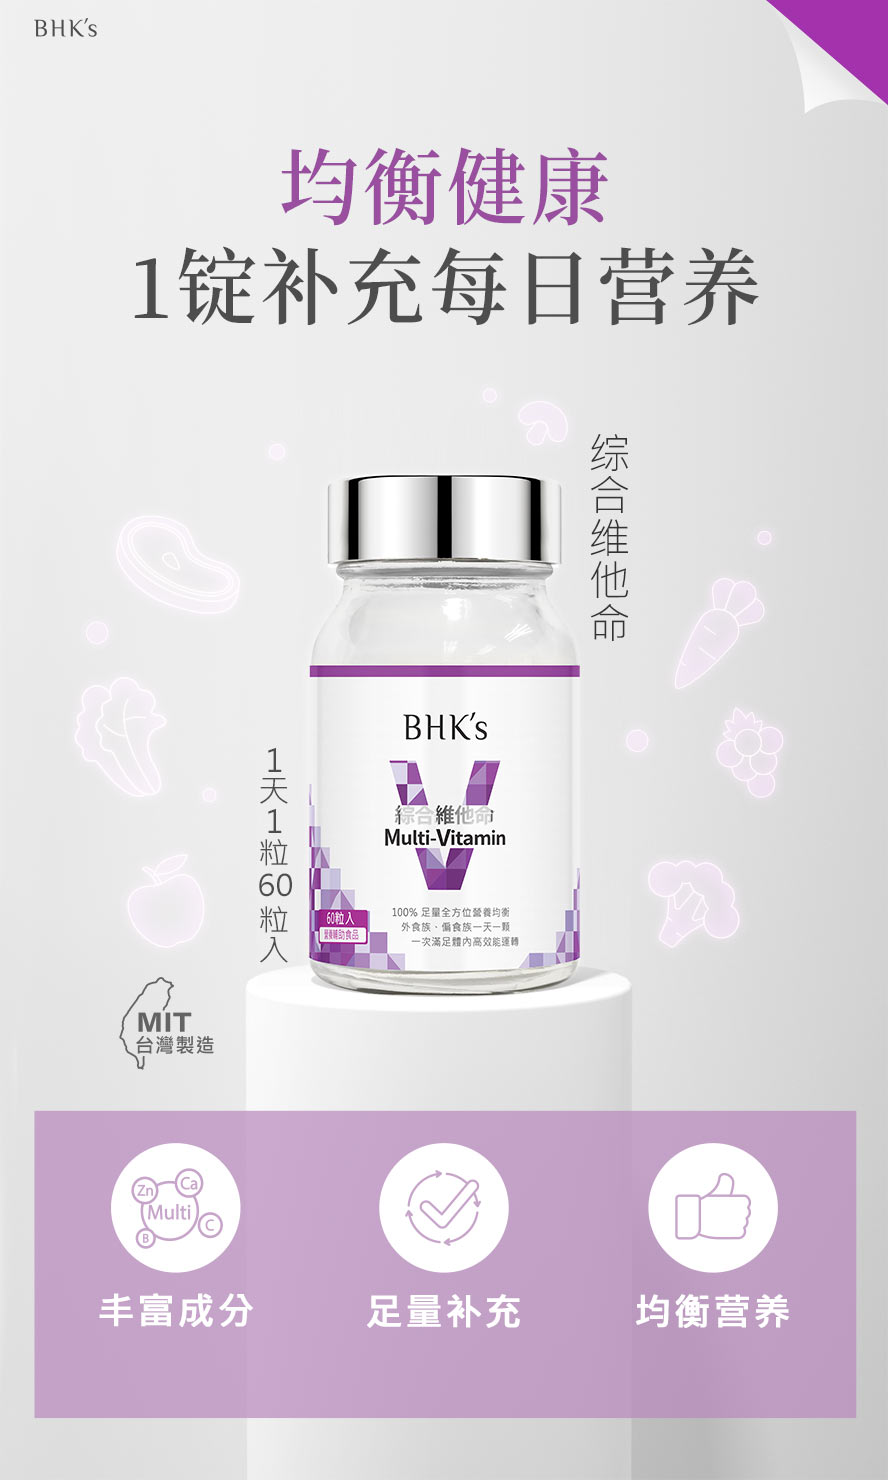 BHK's综合维他命，内含人体所需13种维生素与矿物质，每日一锭满足营养需求。